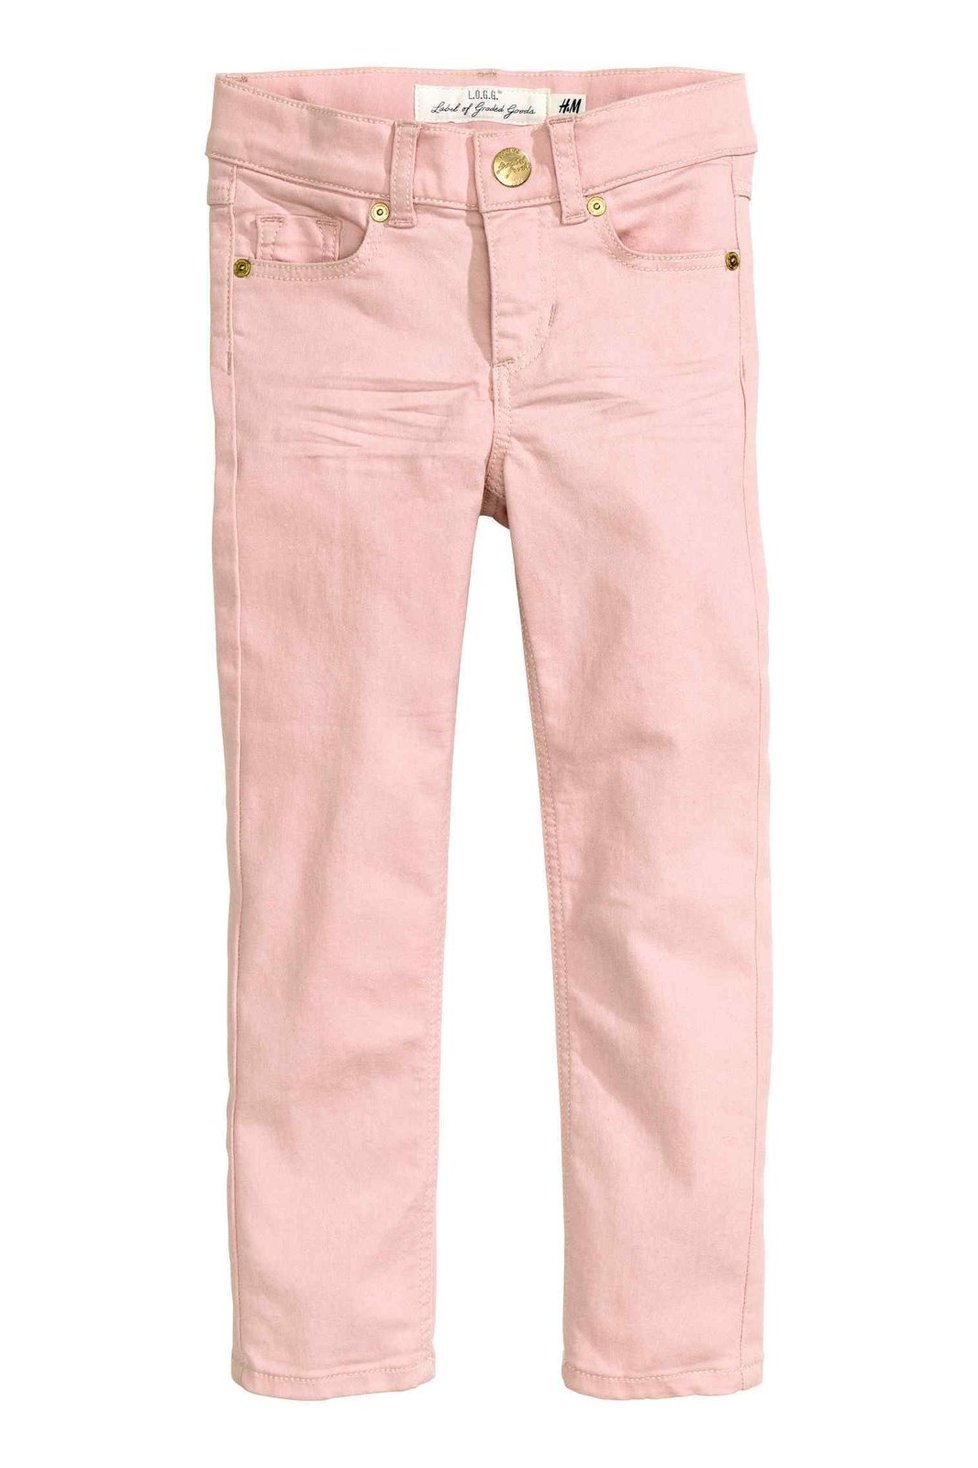 Růžové kalhoty, H&M, 349 Kč.